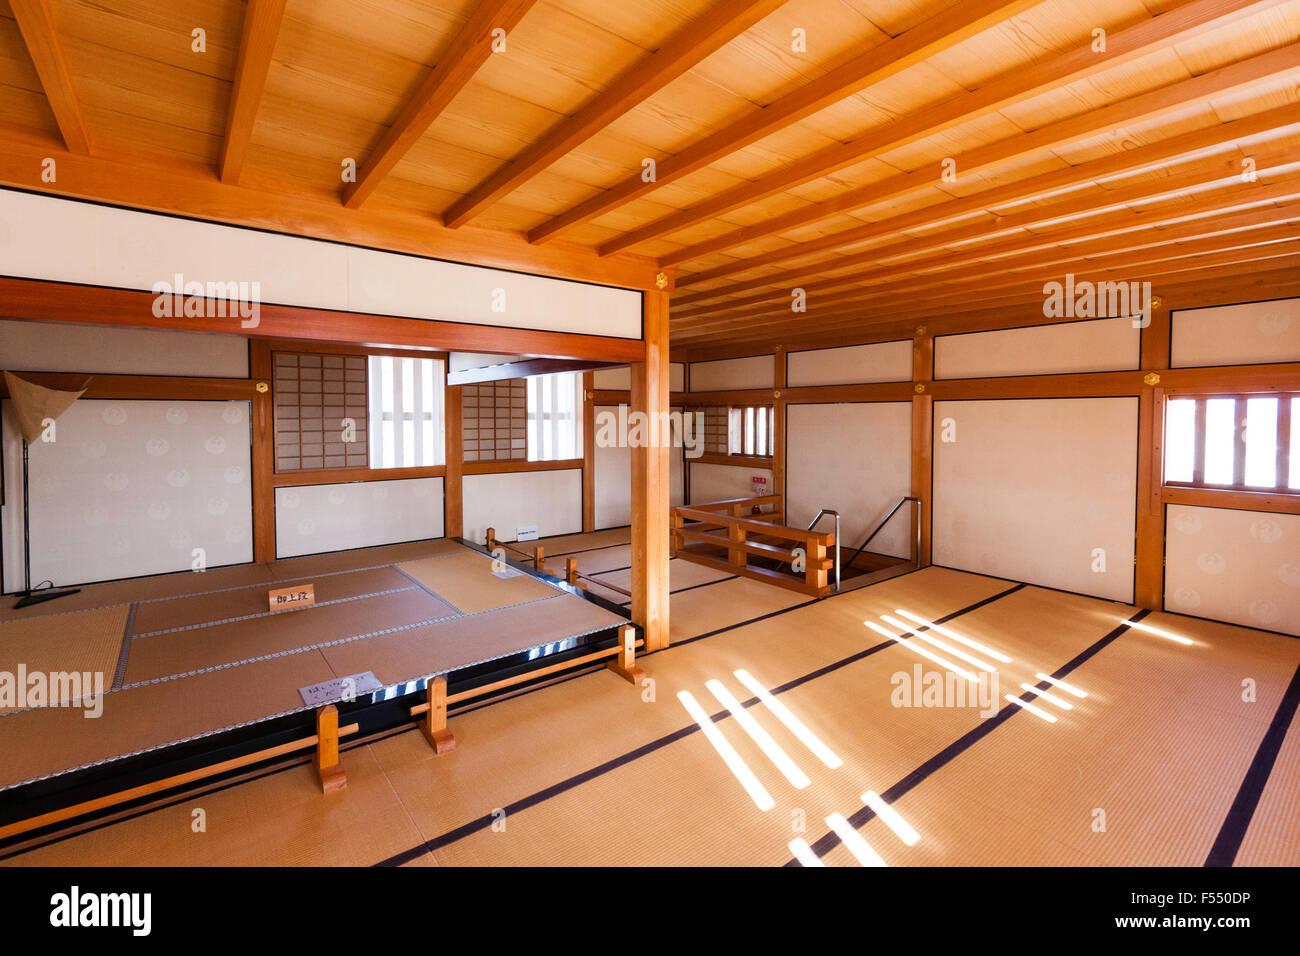 Le Japon, le Château de Tsuyama. Une reconstruction fidèle à l'Bitchu Yagura tourelle de la résidence du daimyo. Chambre au dernier étage, la résidence du Seigneur. Banque D'Images